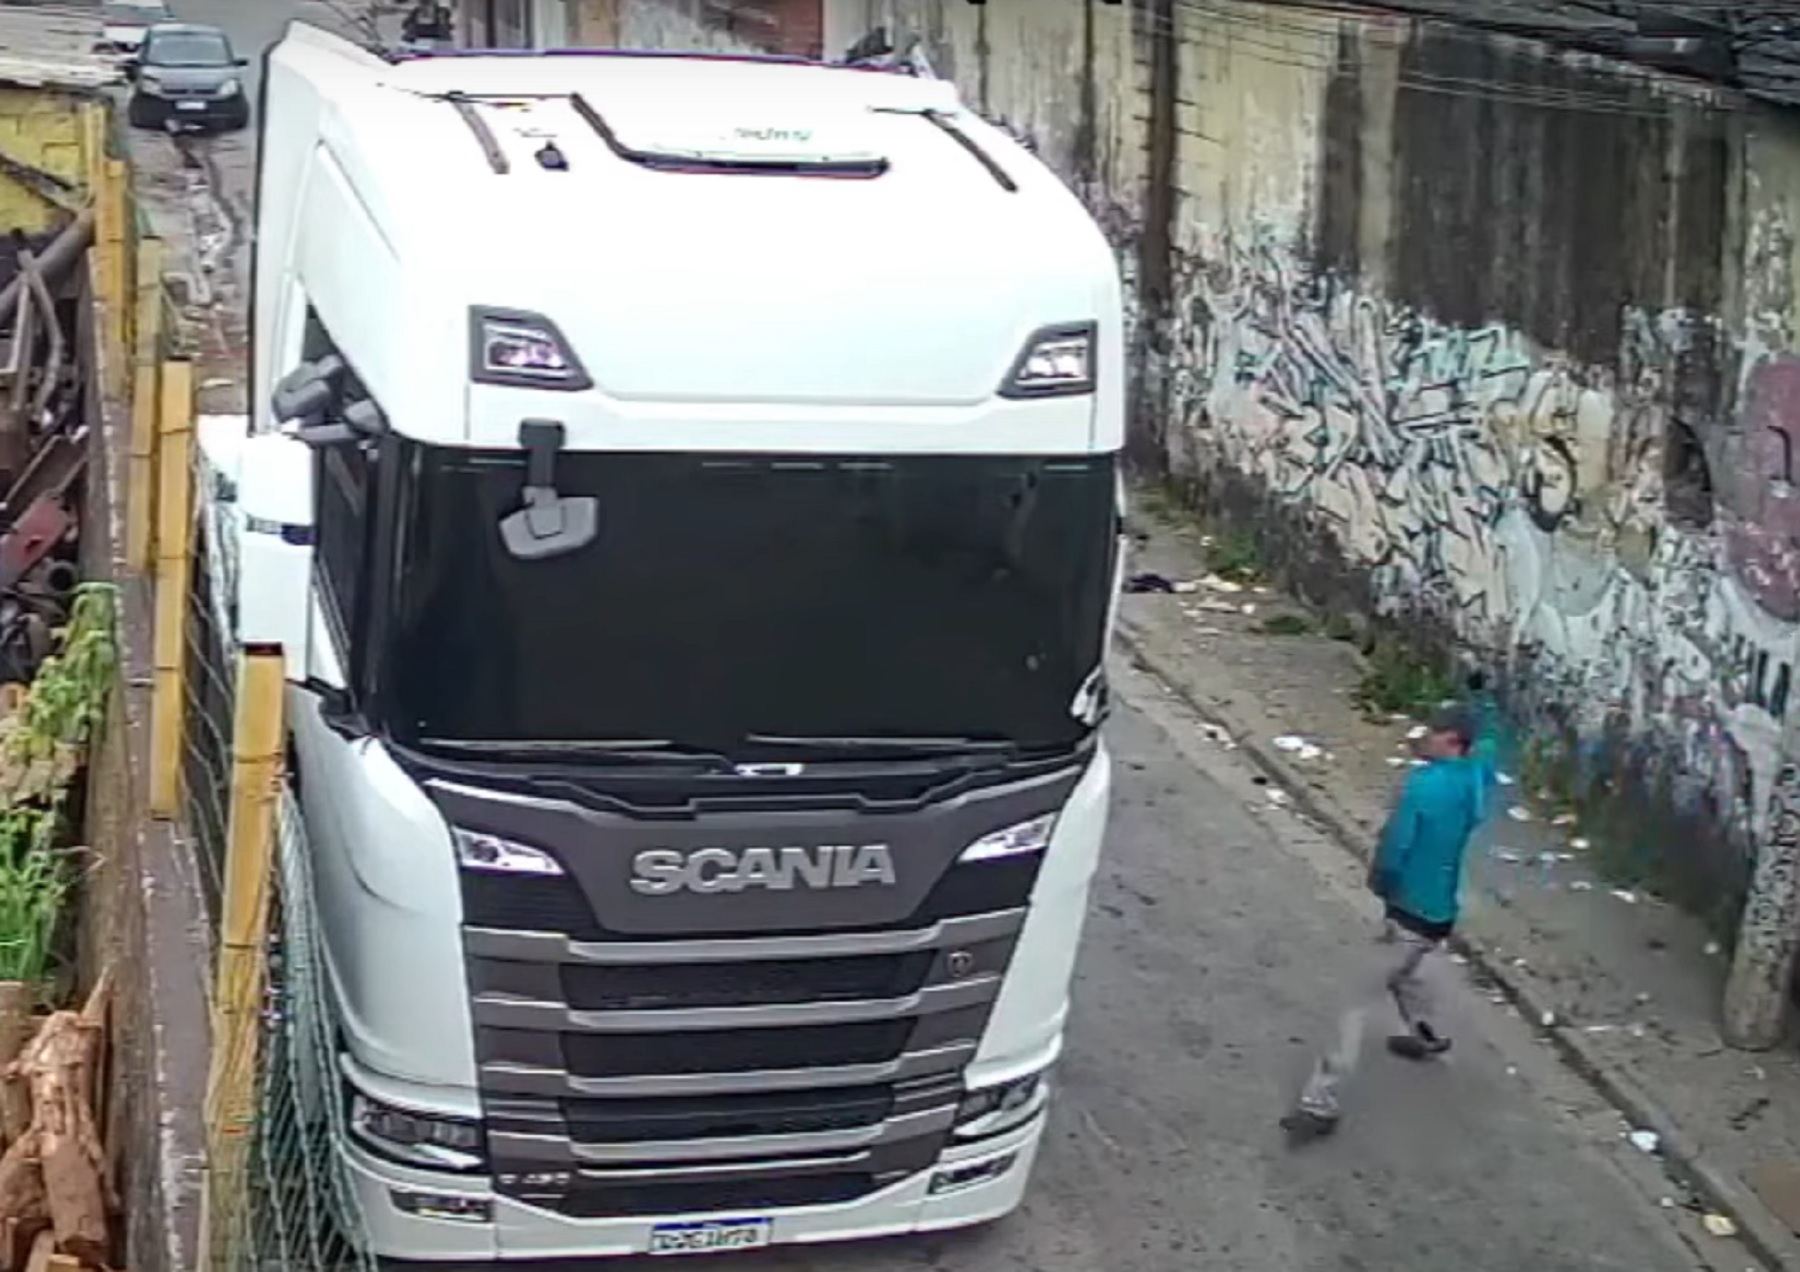 Vídeo: câmera de segurança registra roubo de caminhão em plena luz do dia